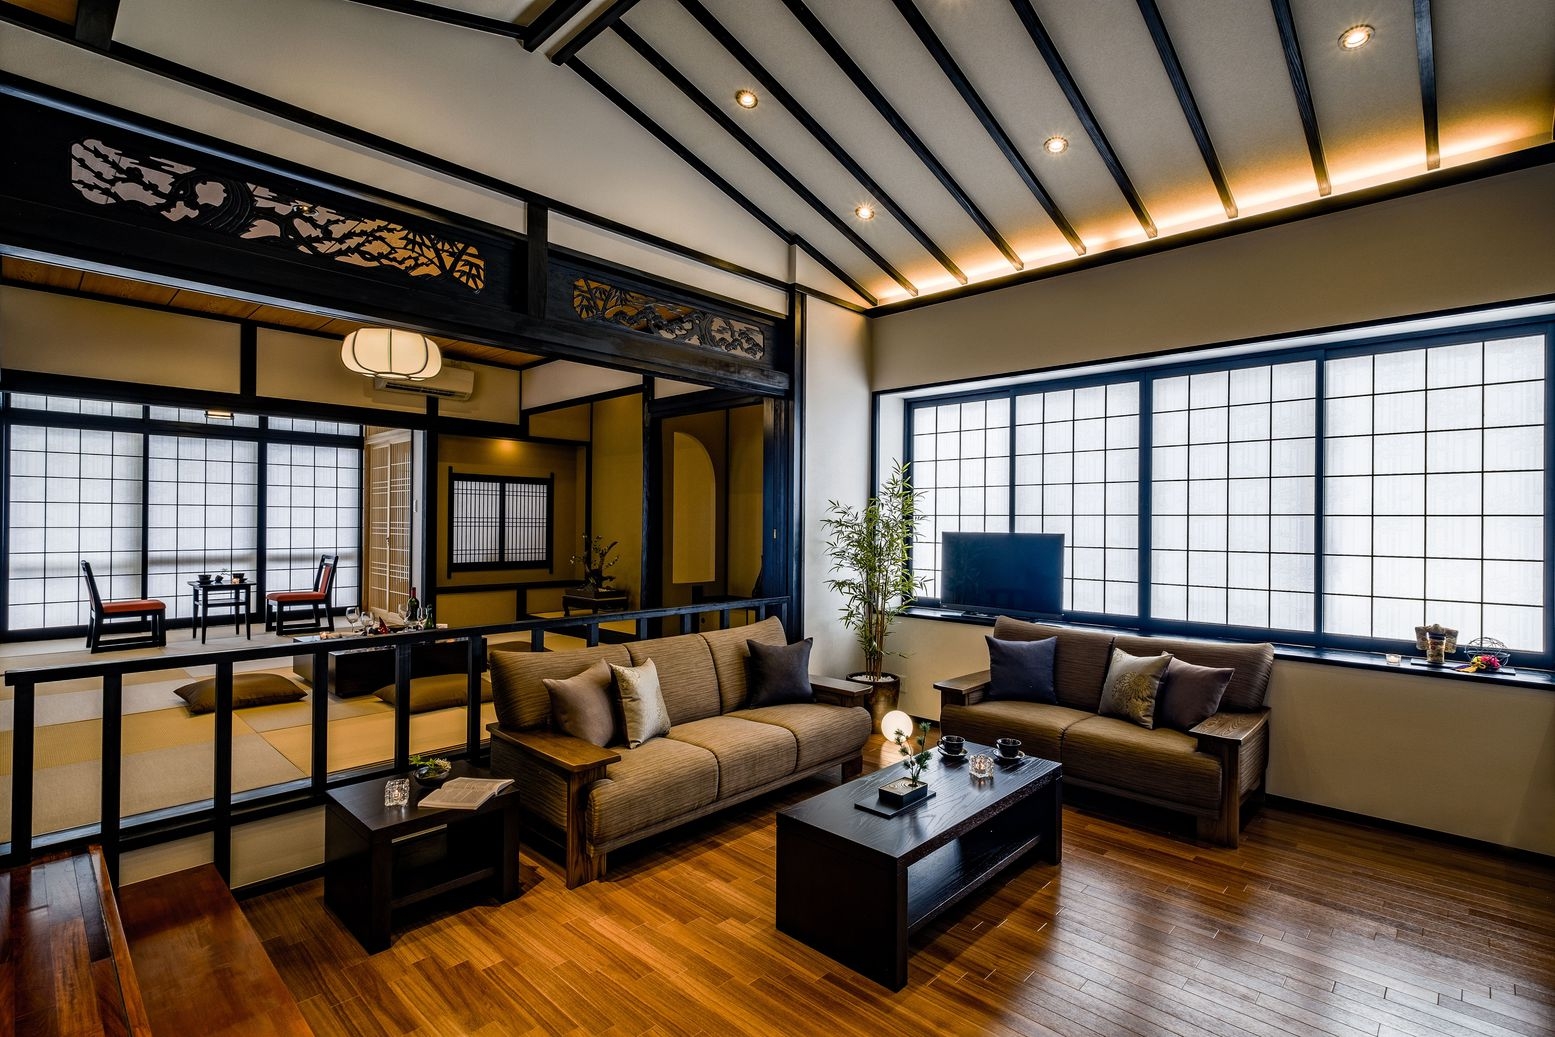  ６名様の宿泊可能！日本の伝統家屋で過ごせる貴重な宿泊体験